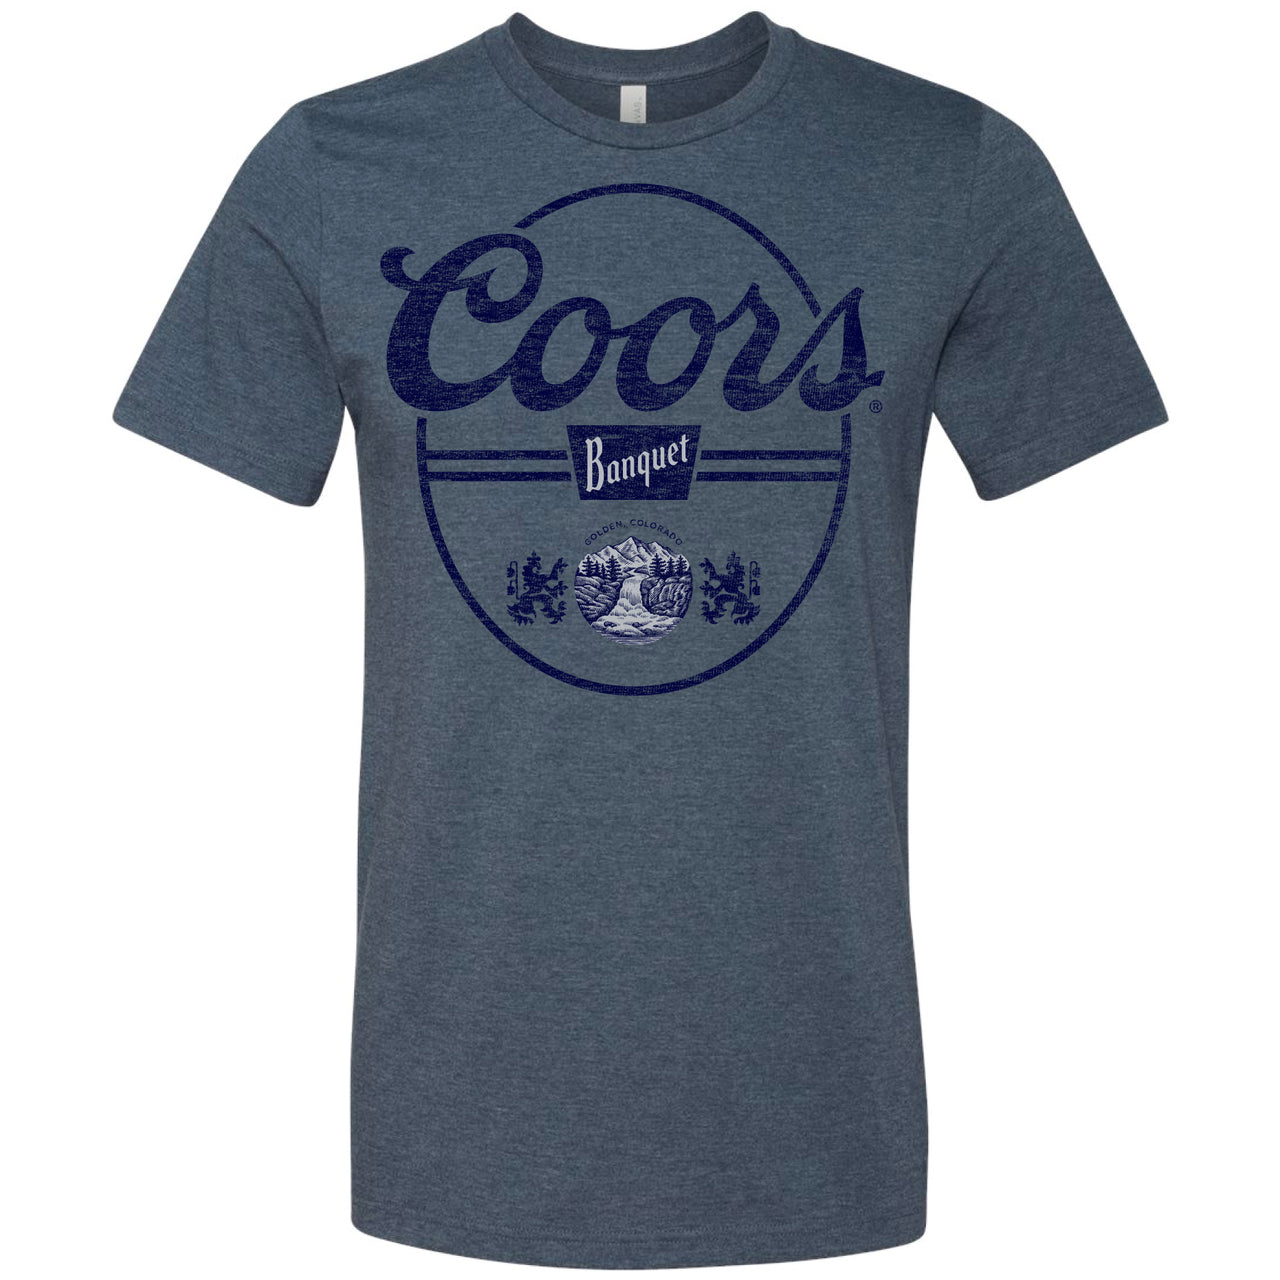 Coors Banquet Oval T-Shirt